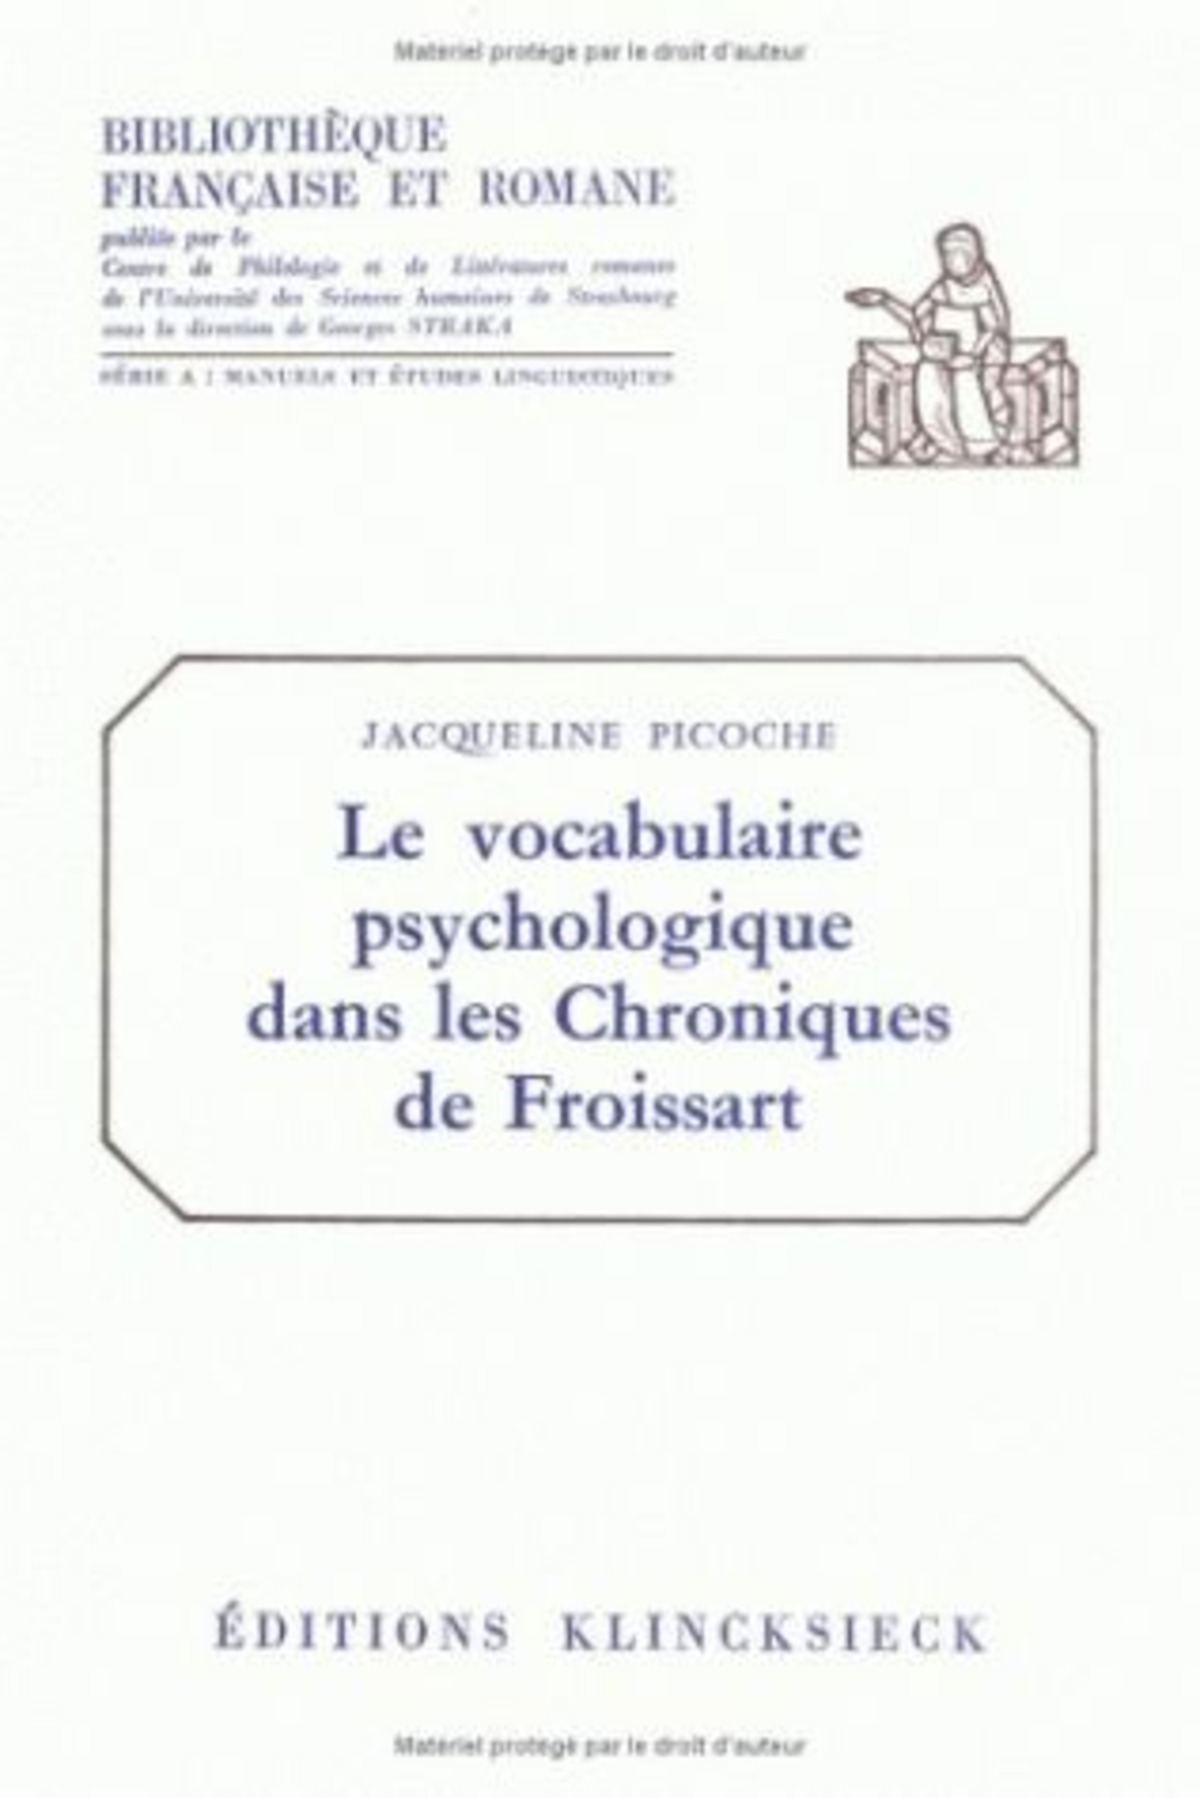 Le Vocabulaire psychologique dans les Chroniques de Froissart